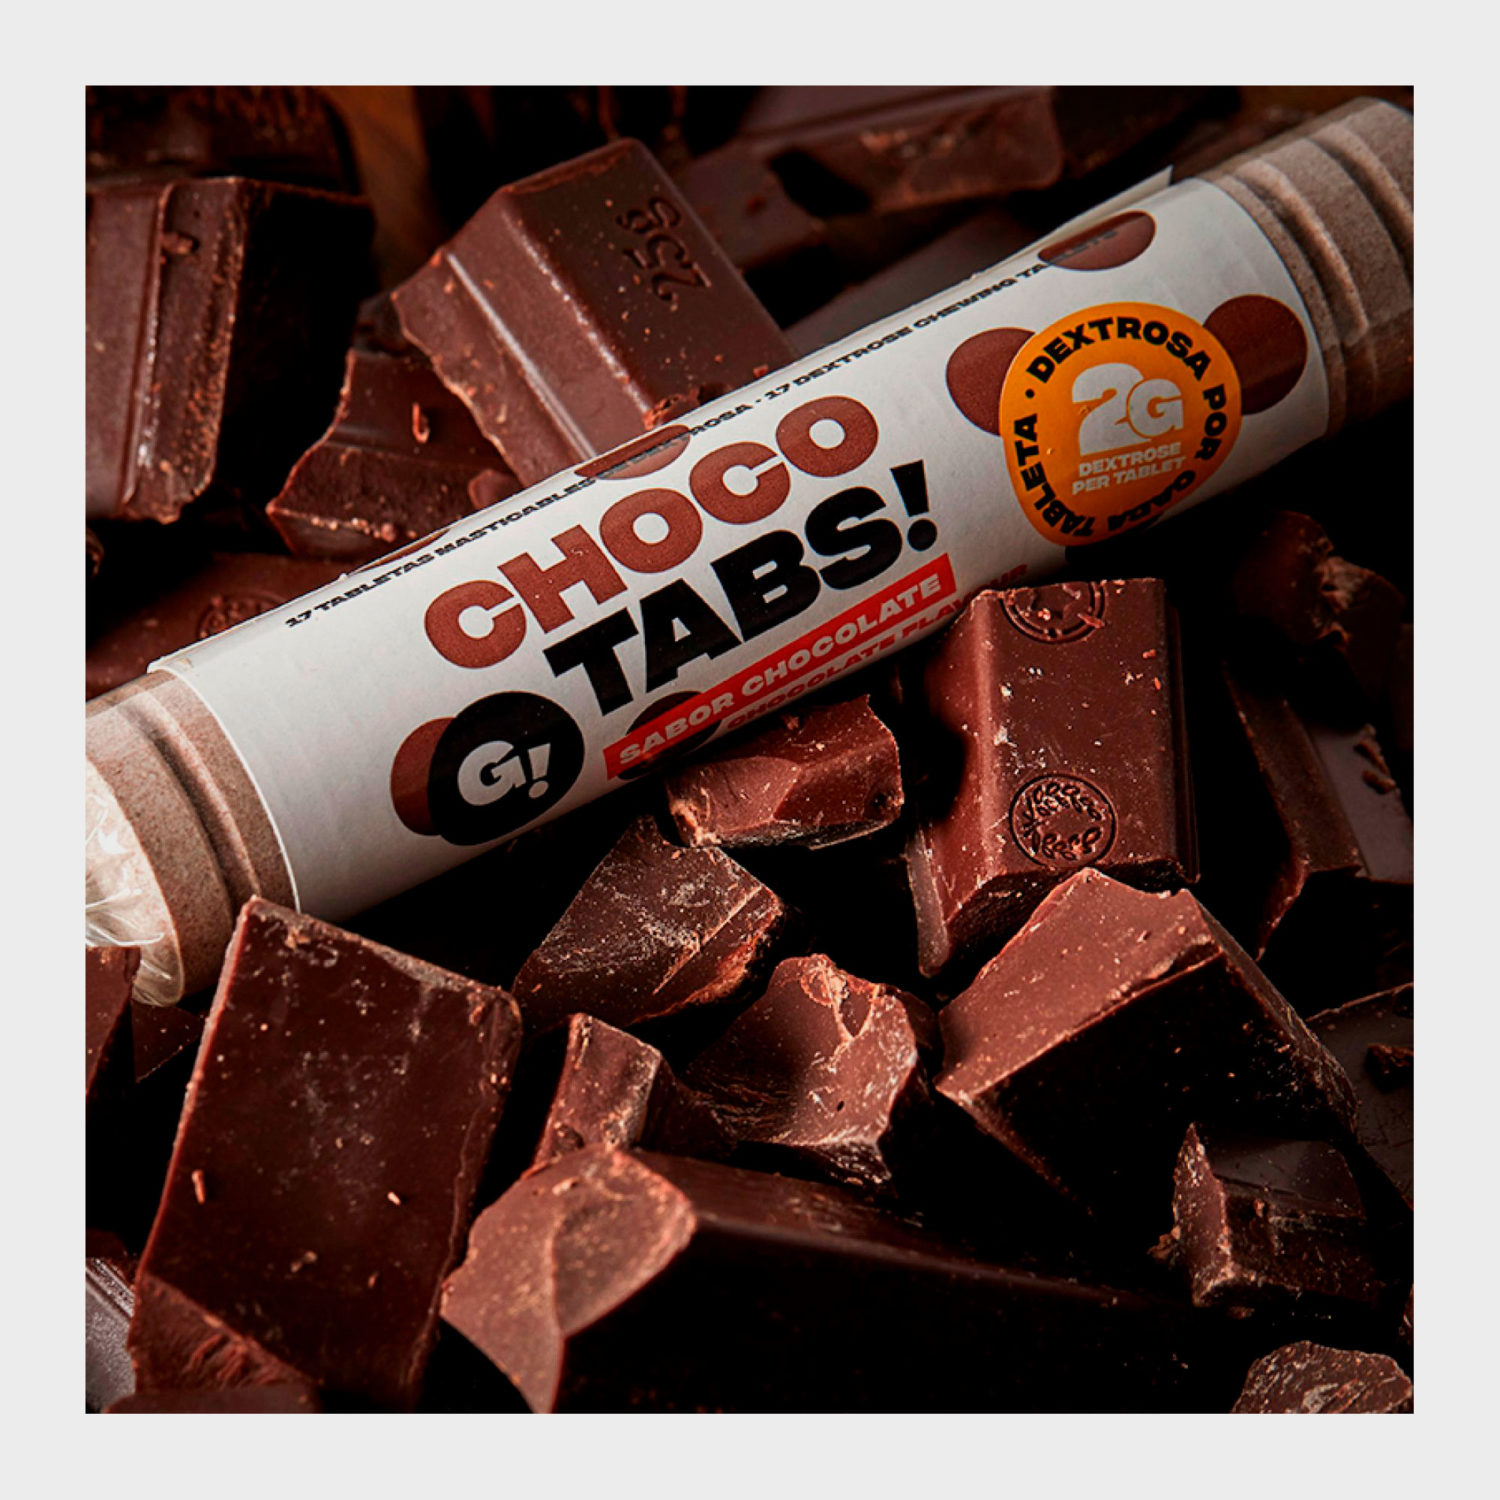 Chocotabs roll de pastillas de glucosa de chocolate.